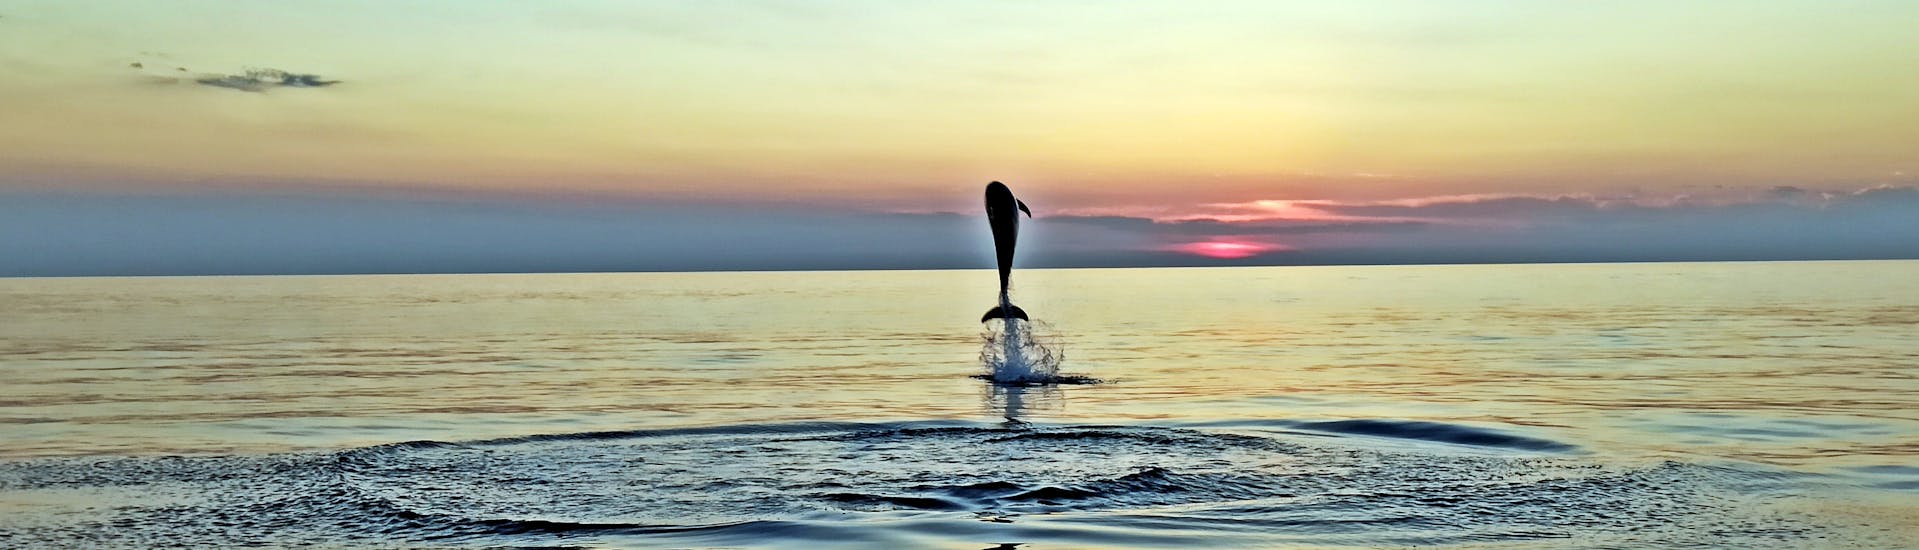 Balade en bateau au coucher du soleil avec Observation de dauphins.